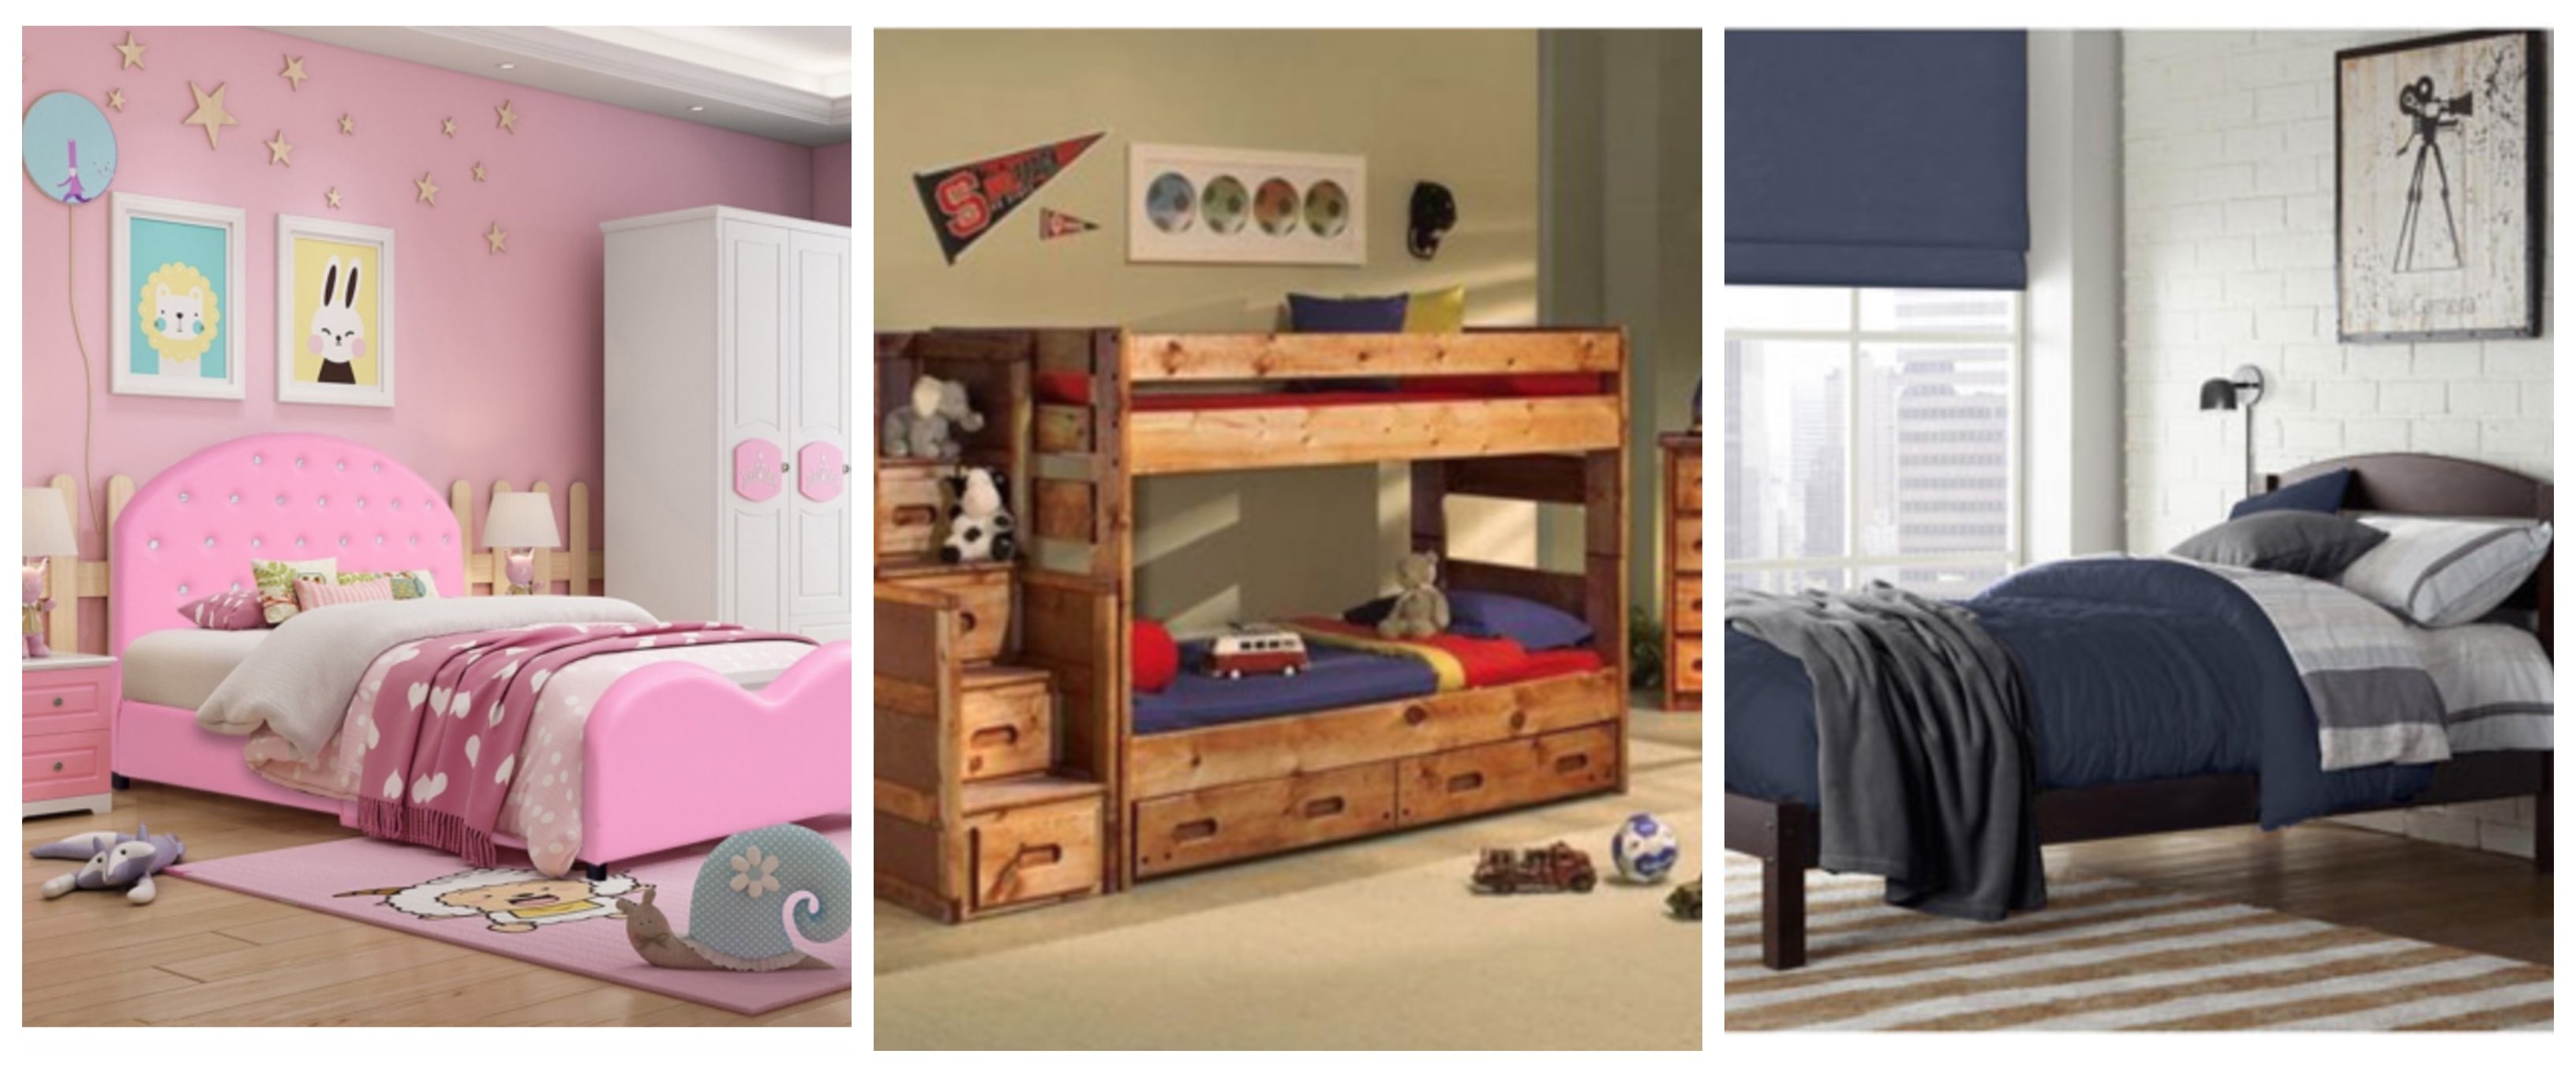 renovate your kid's bedroom